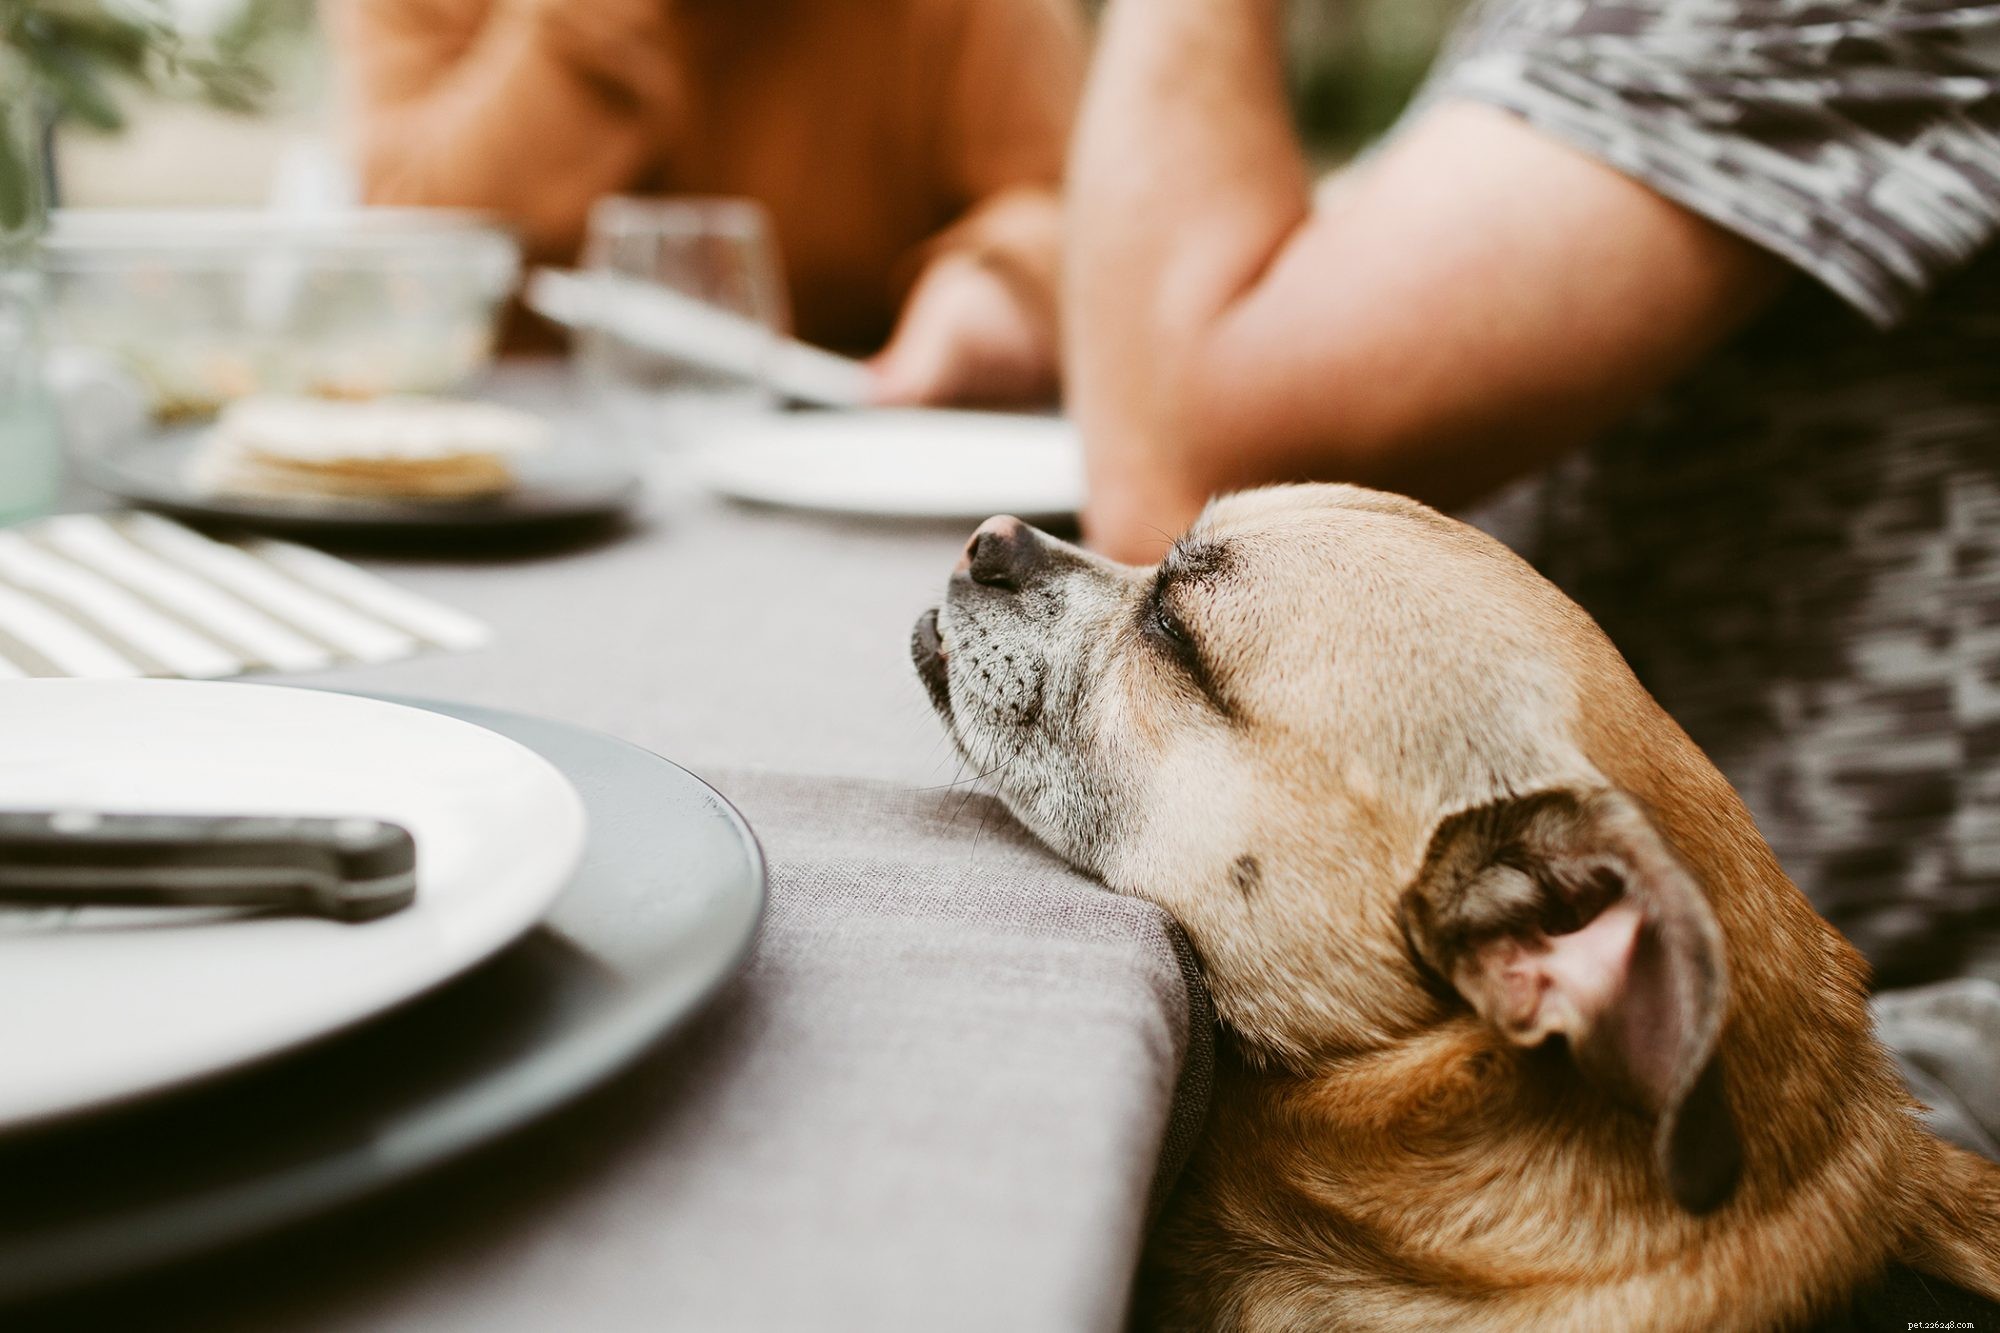 Il prosciutto è un alimento sicuro per i cani da mangiare?